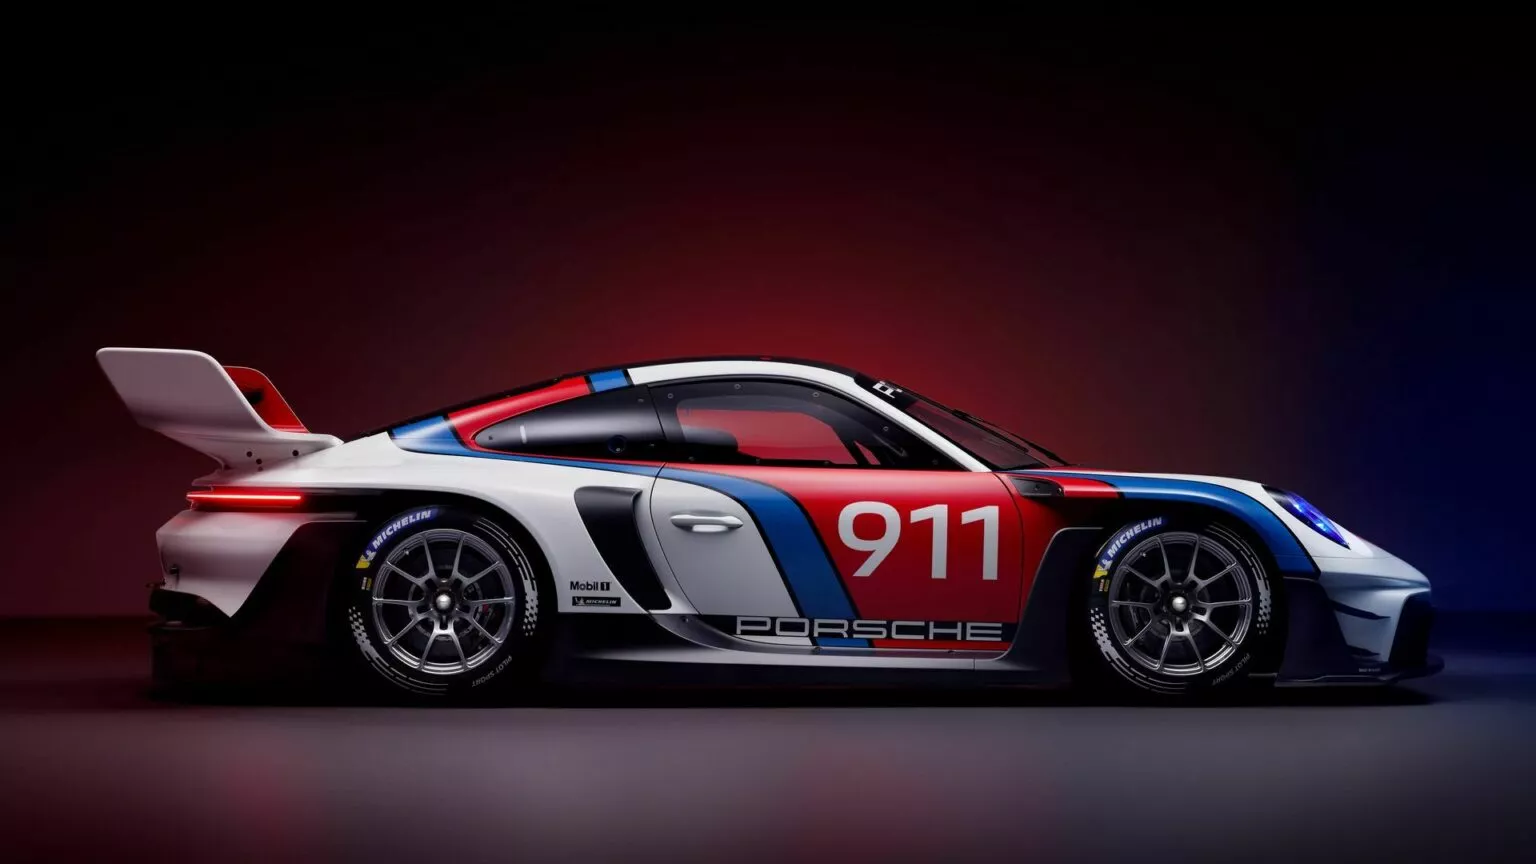 Porsche 911 GT3 R Rennsport 7 1536x864 1